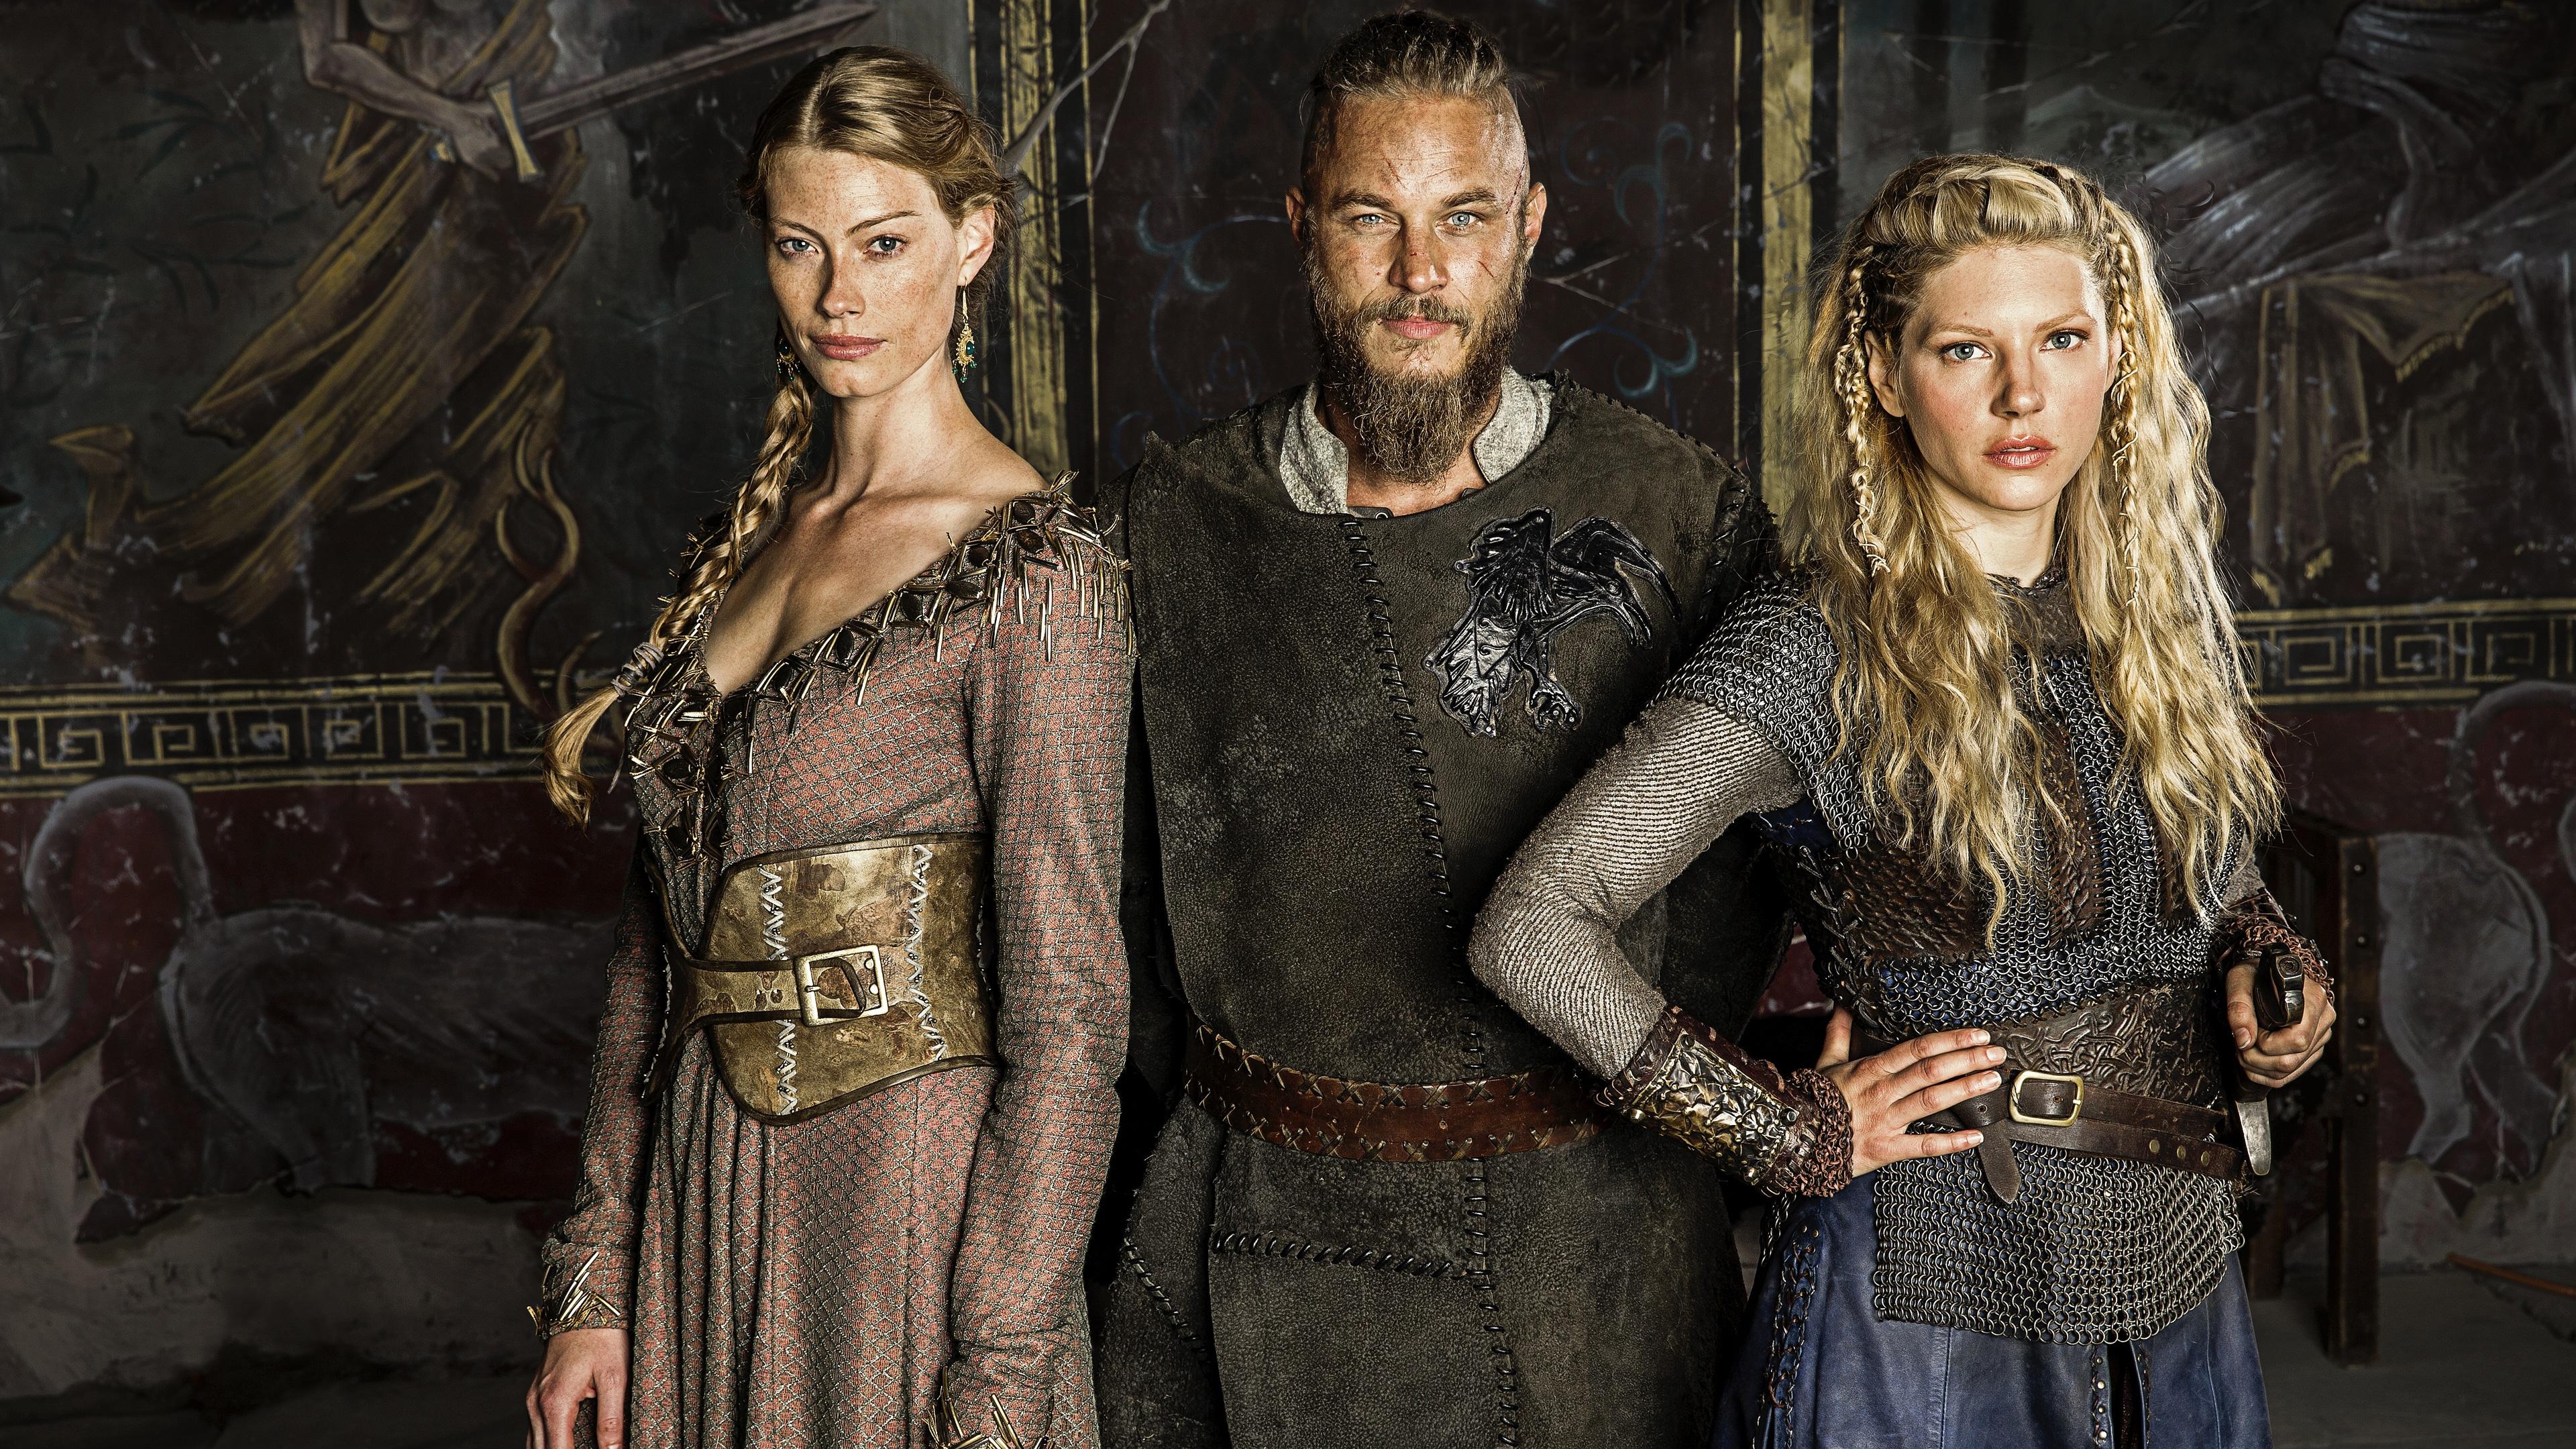 Vikings TV Series Wallpaper in jpg format for free download